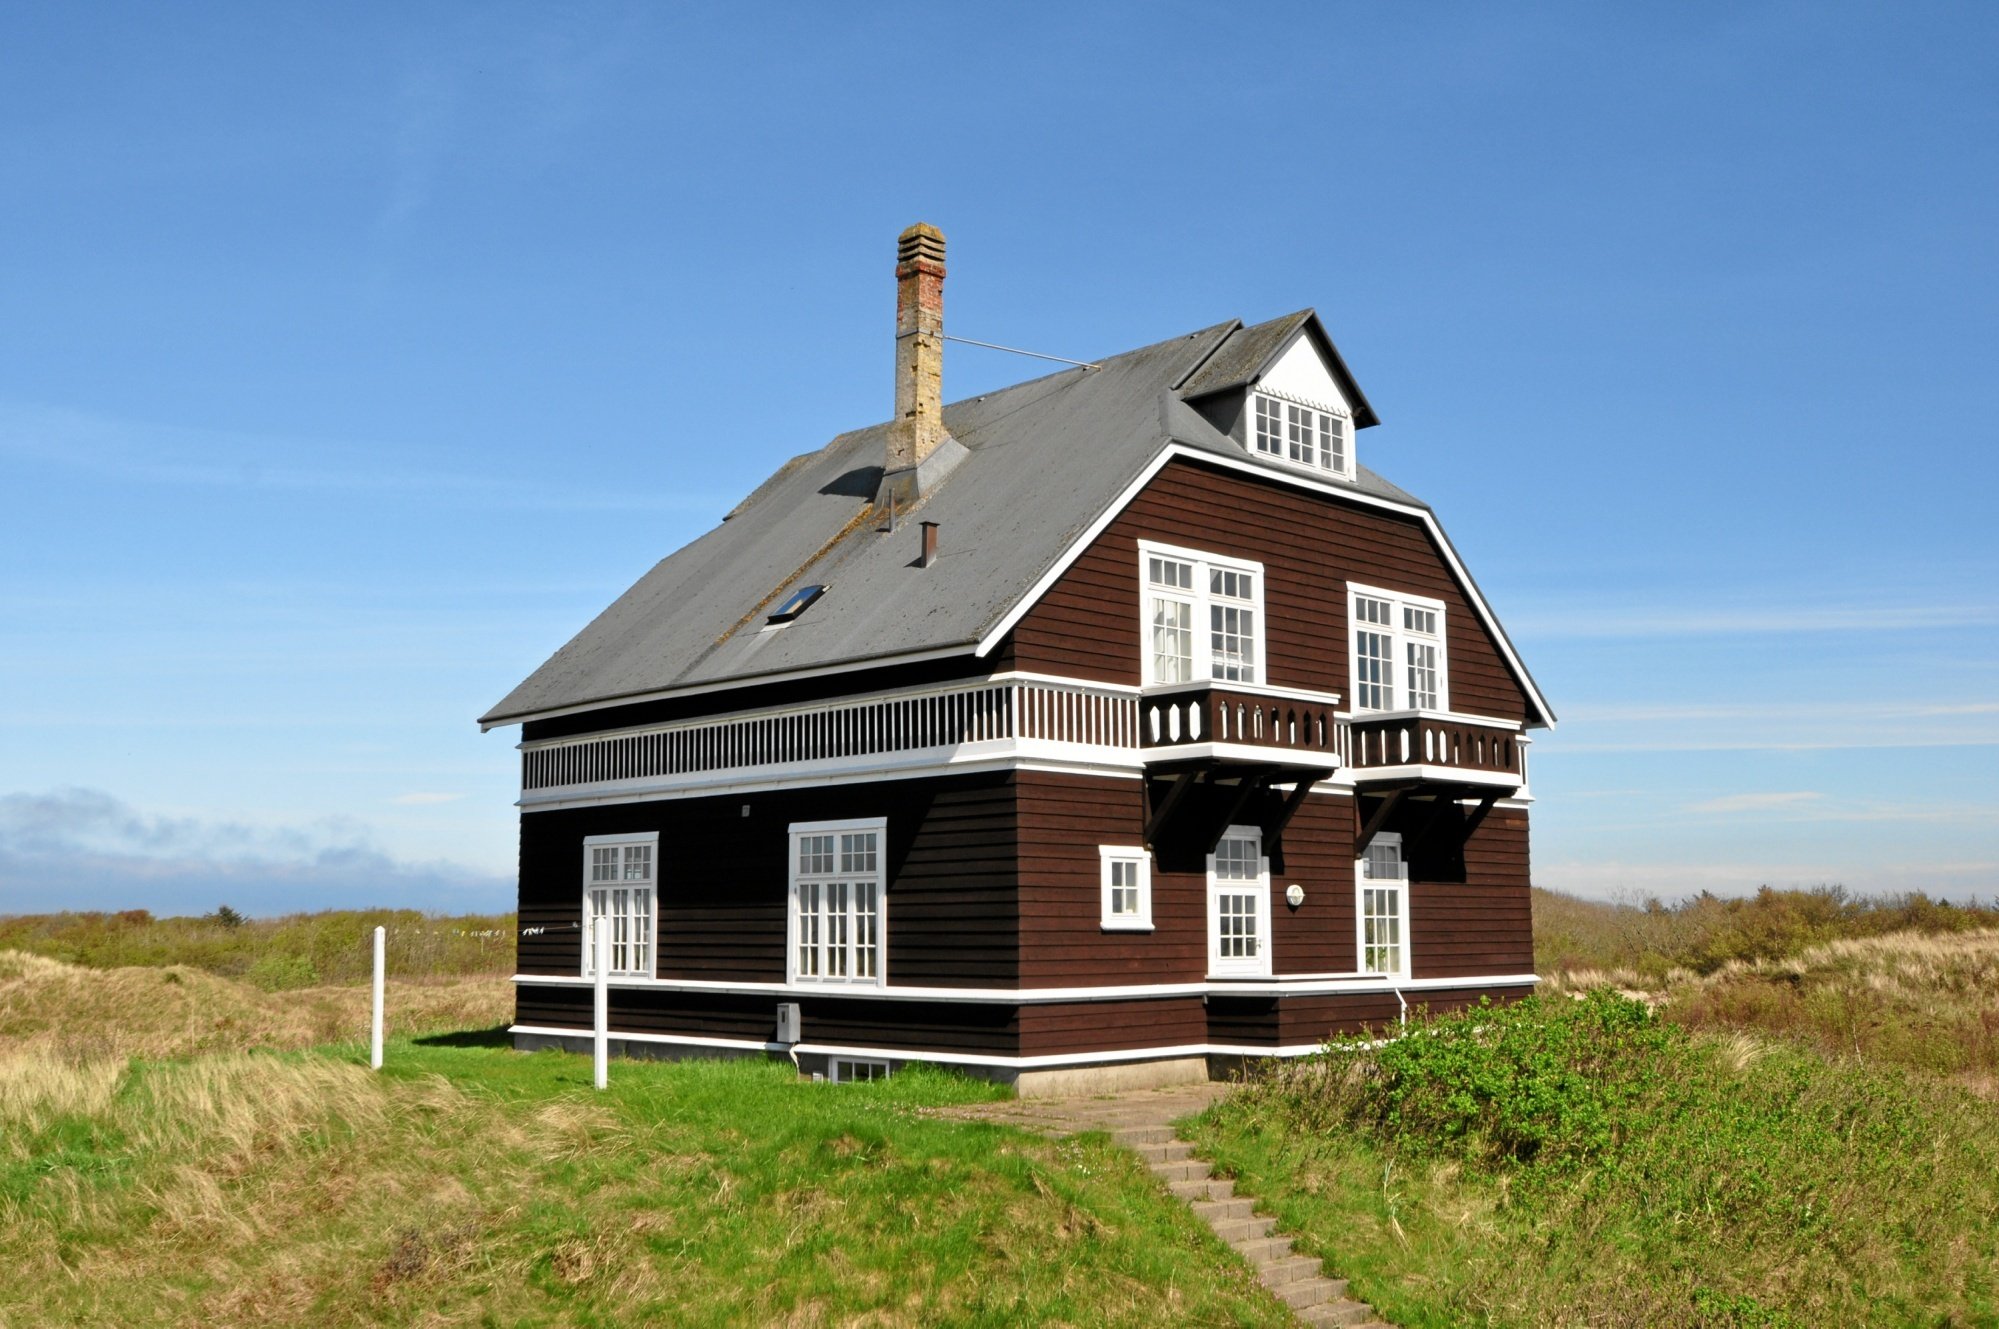 Et af Jyllands dyreste sommerhuse solgt i Skagen